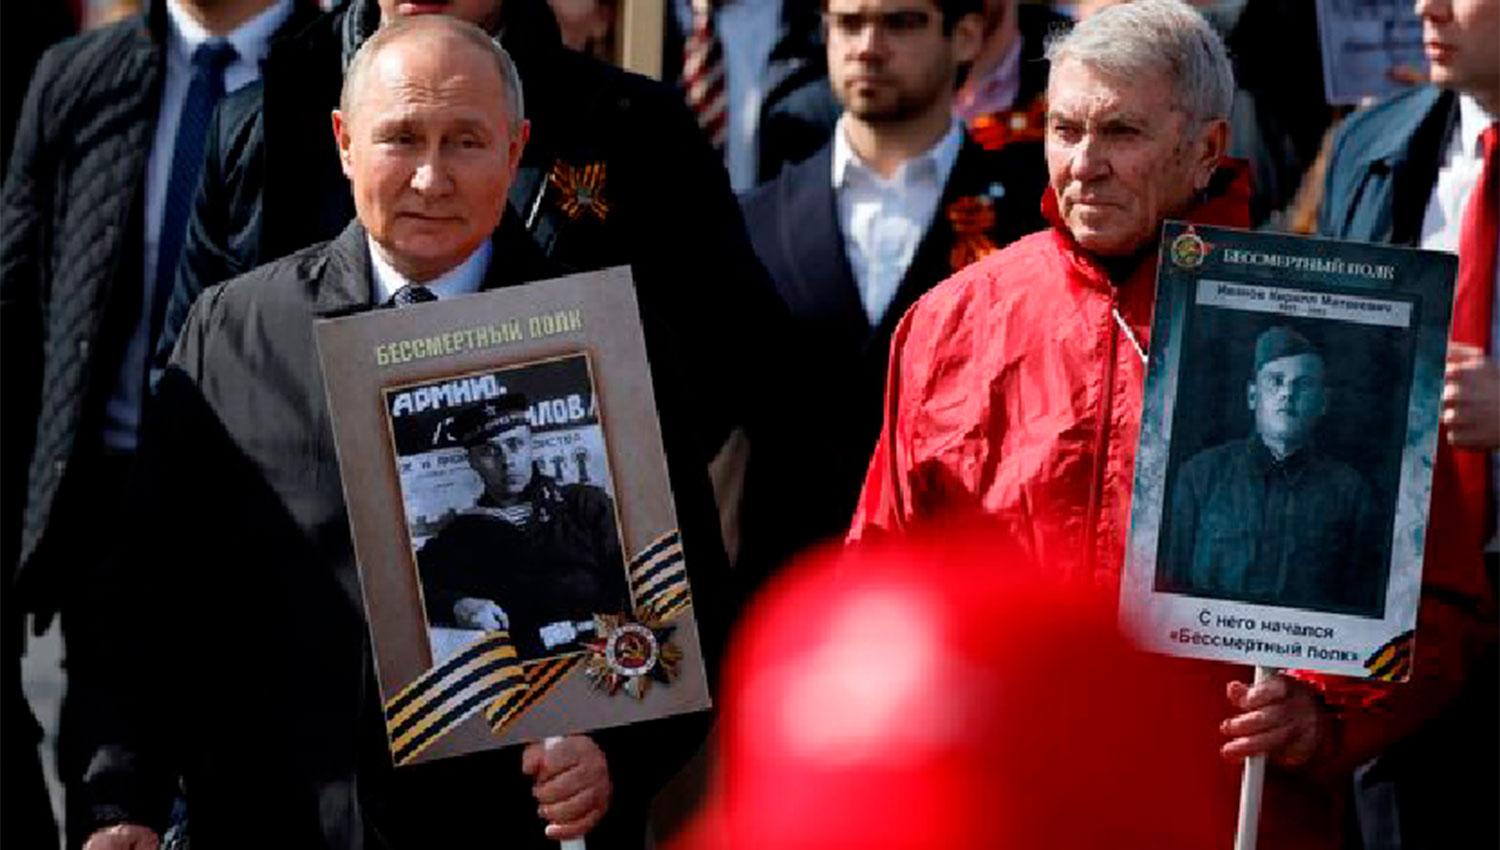 CAMINATA. Putin acompañó a la multitud durante un tramo del camino para conmemorar a los caídos en la Segunda Guerra Mundial.